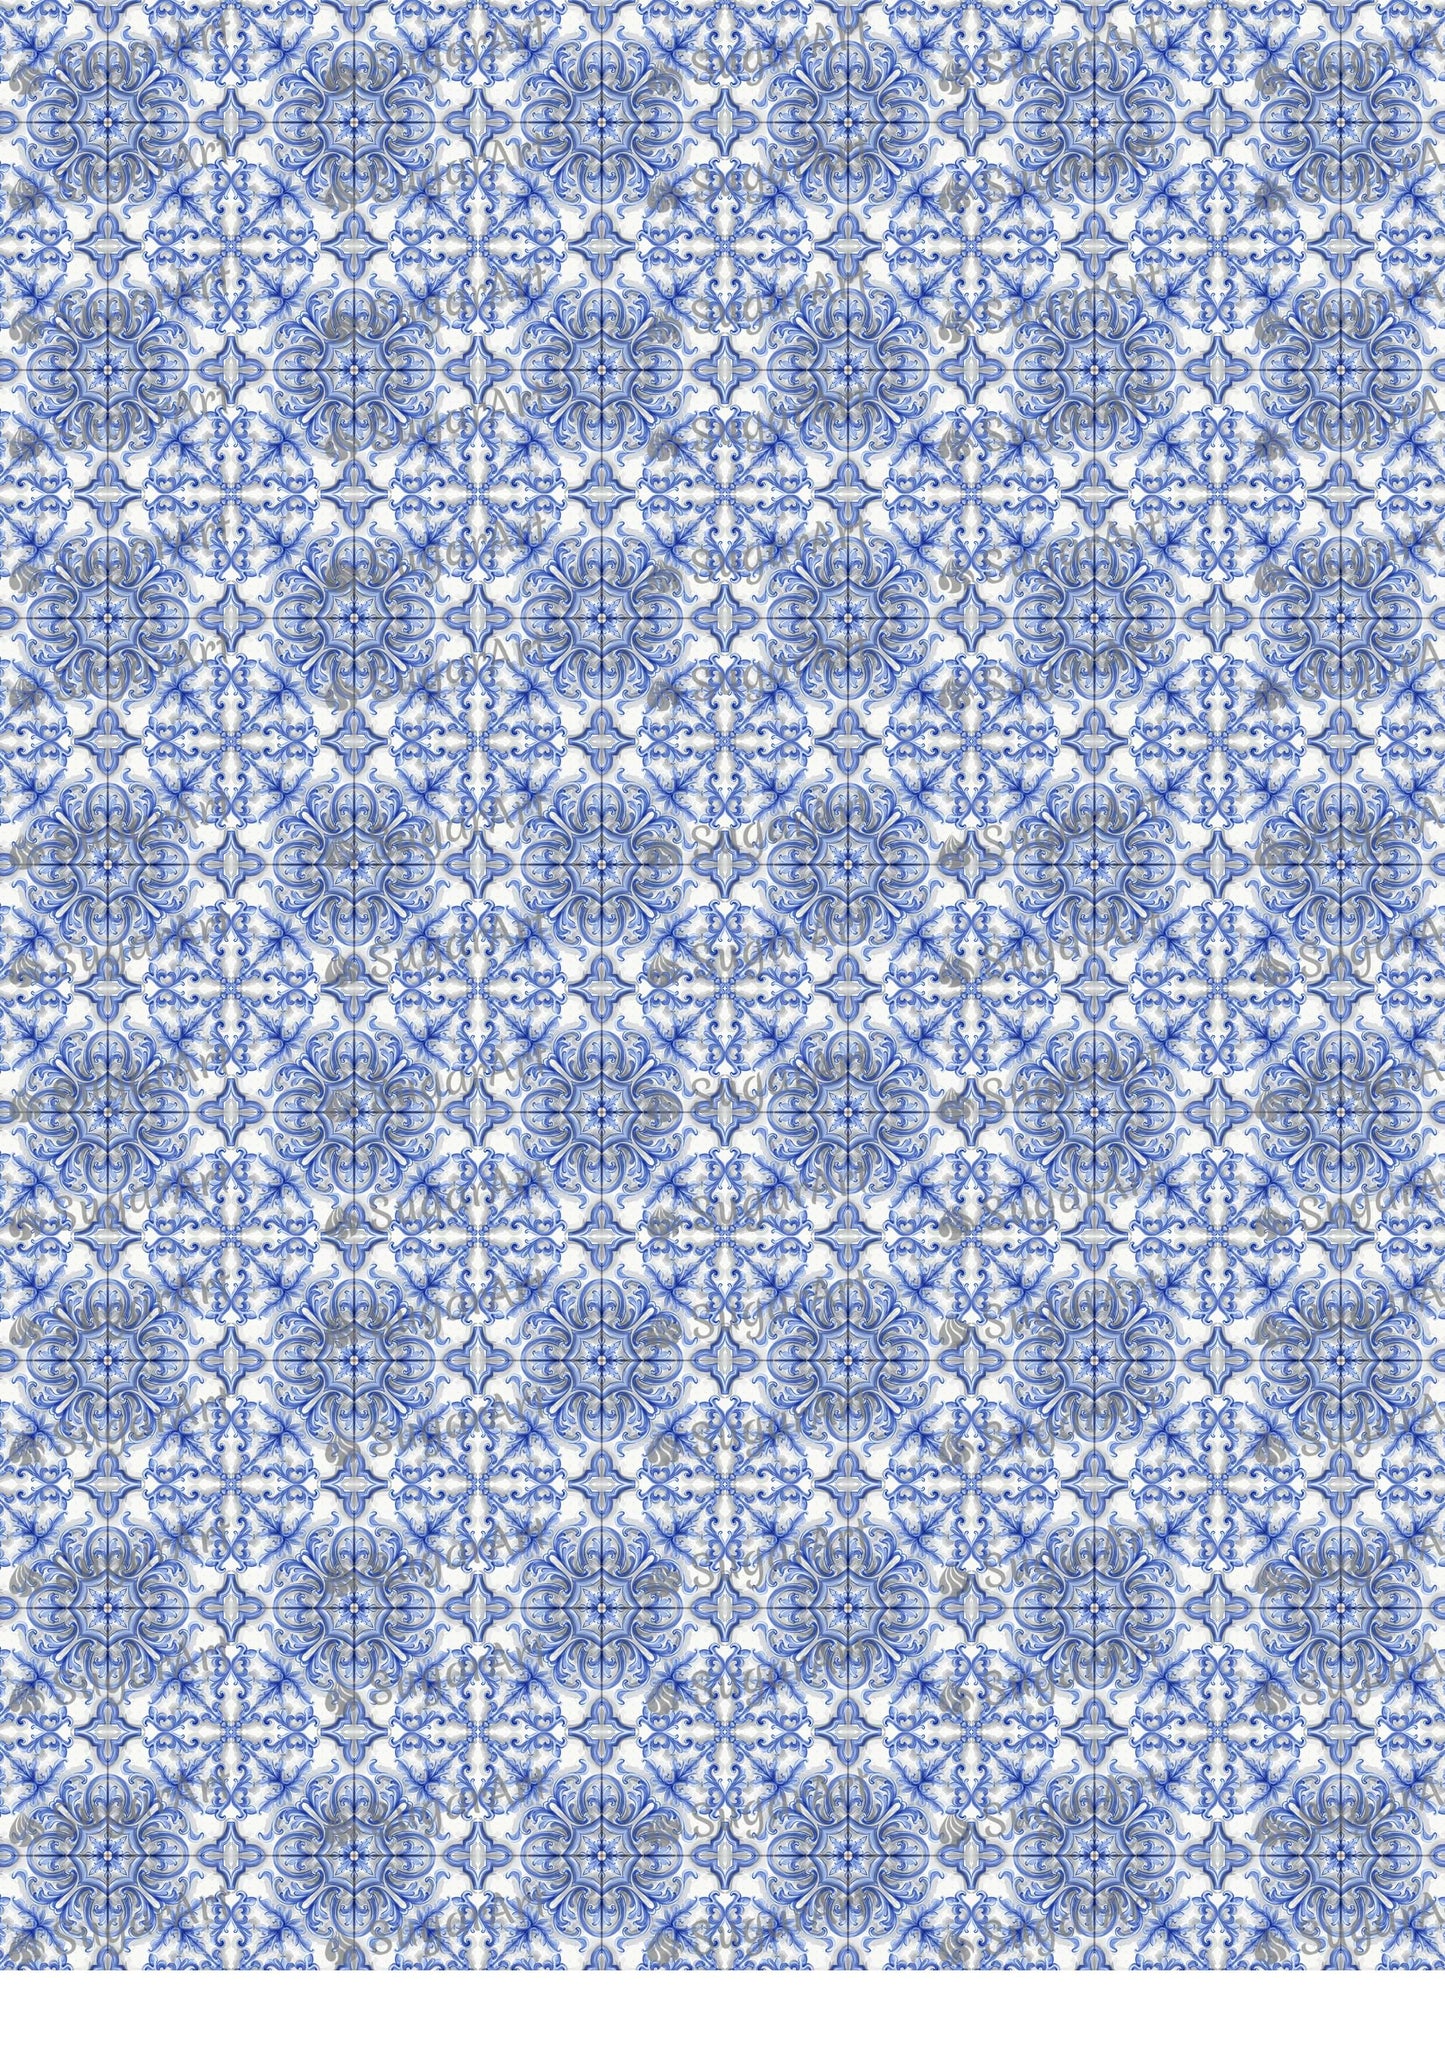 Blue Tile Mosaic Ornament Watercolor - BSA082.